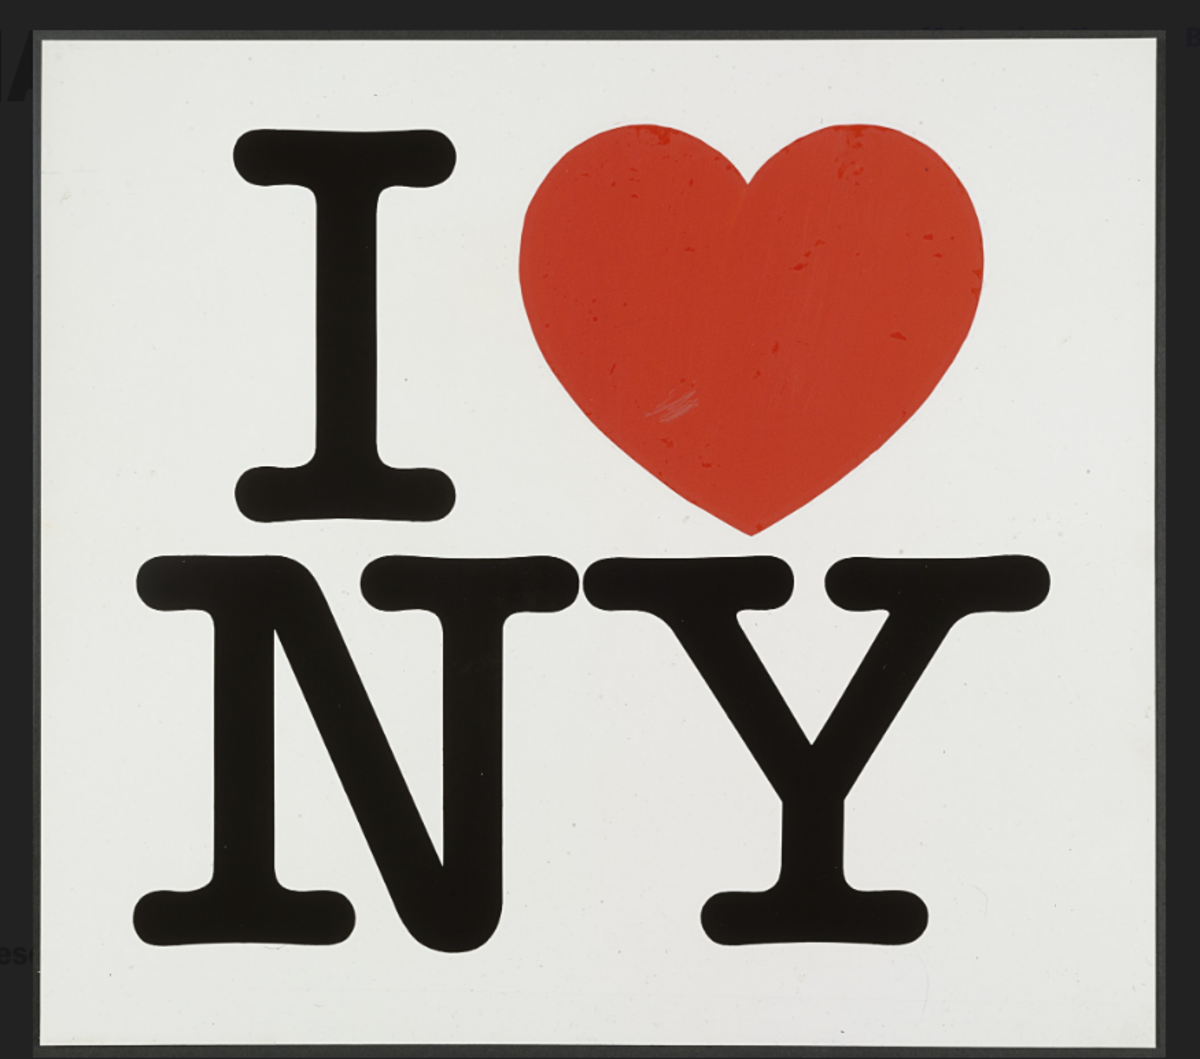 Milton Glasser's love letter to New York.